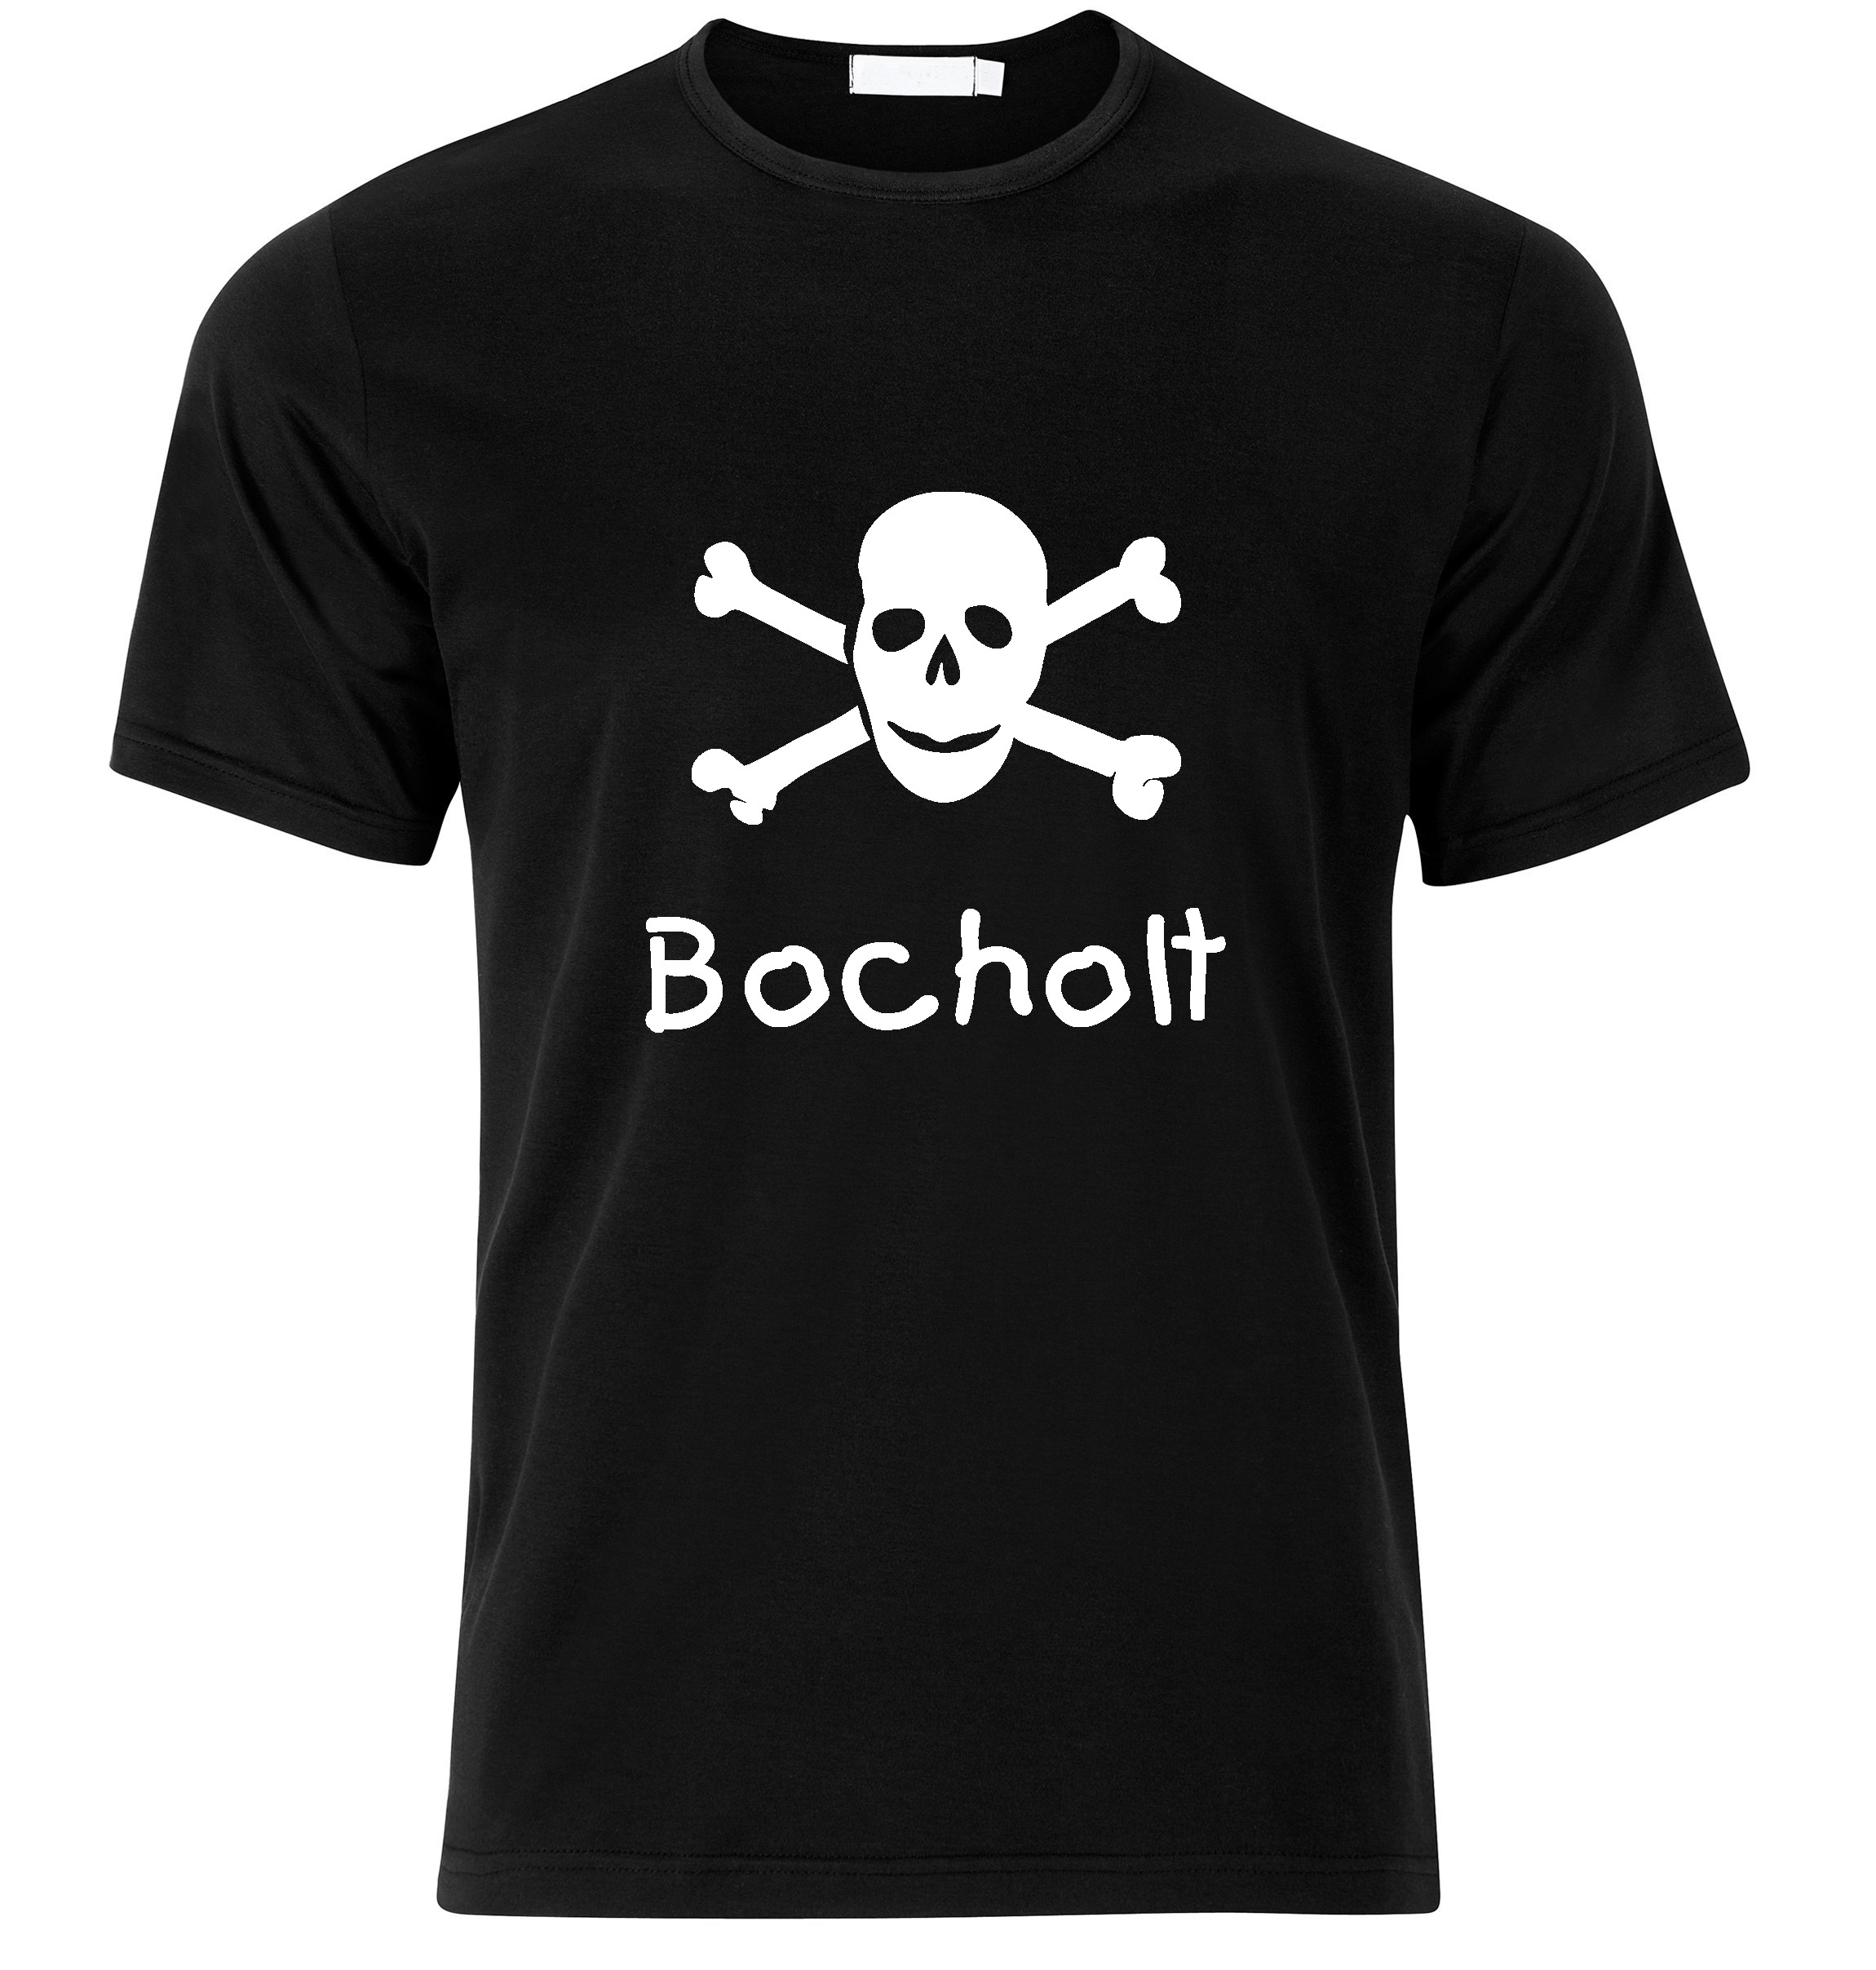 T-Shirt Bocholt Jolly Roger, Totenkopf